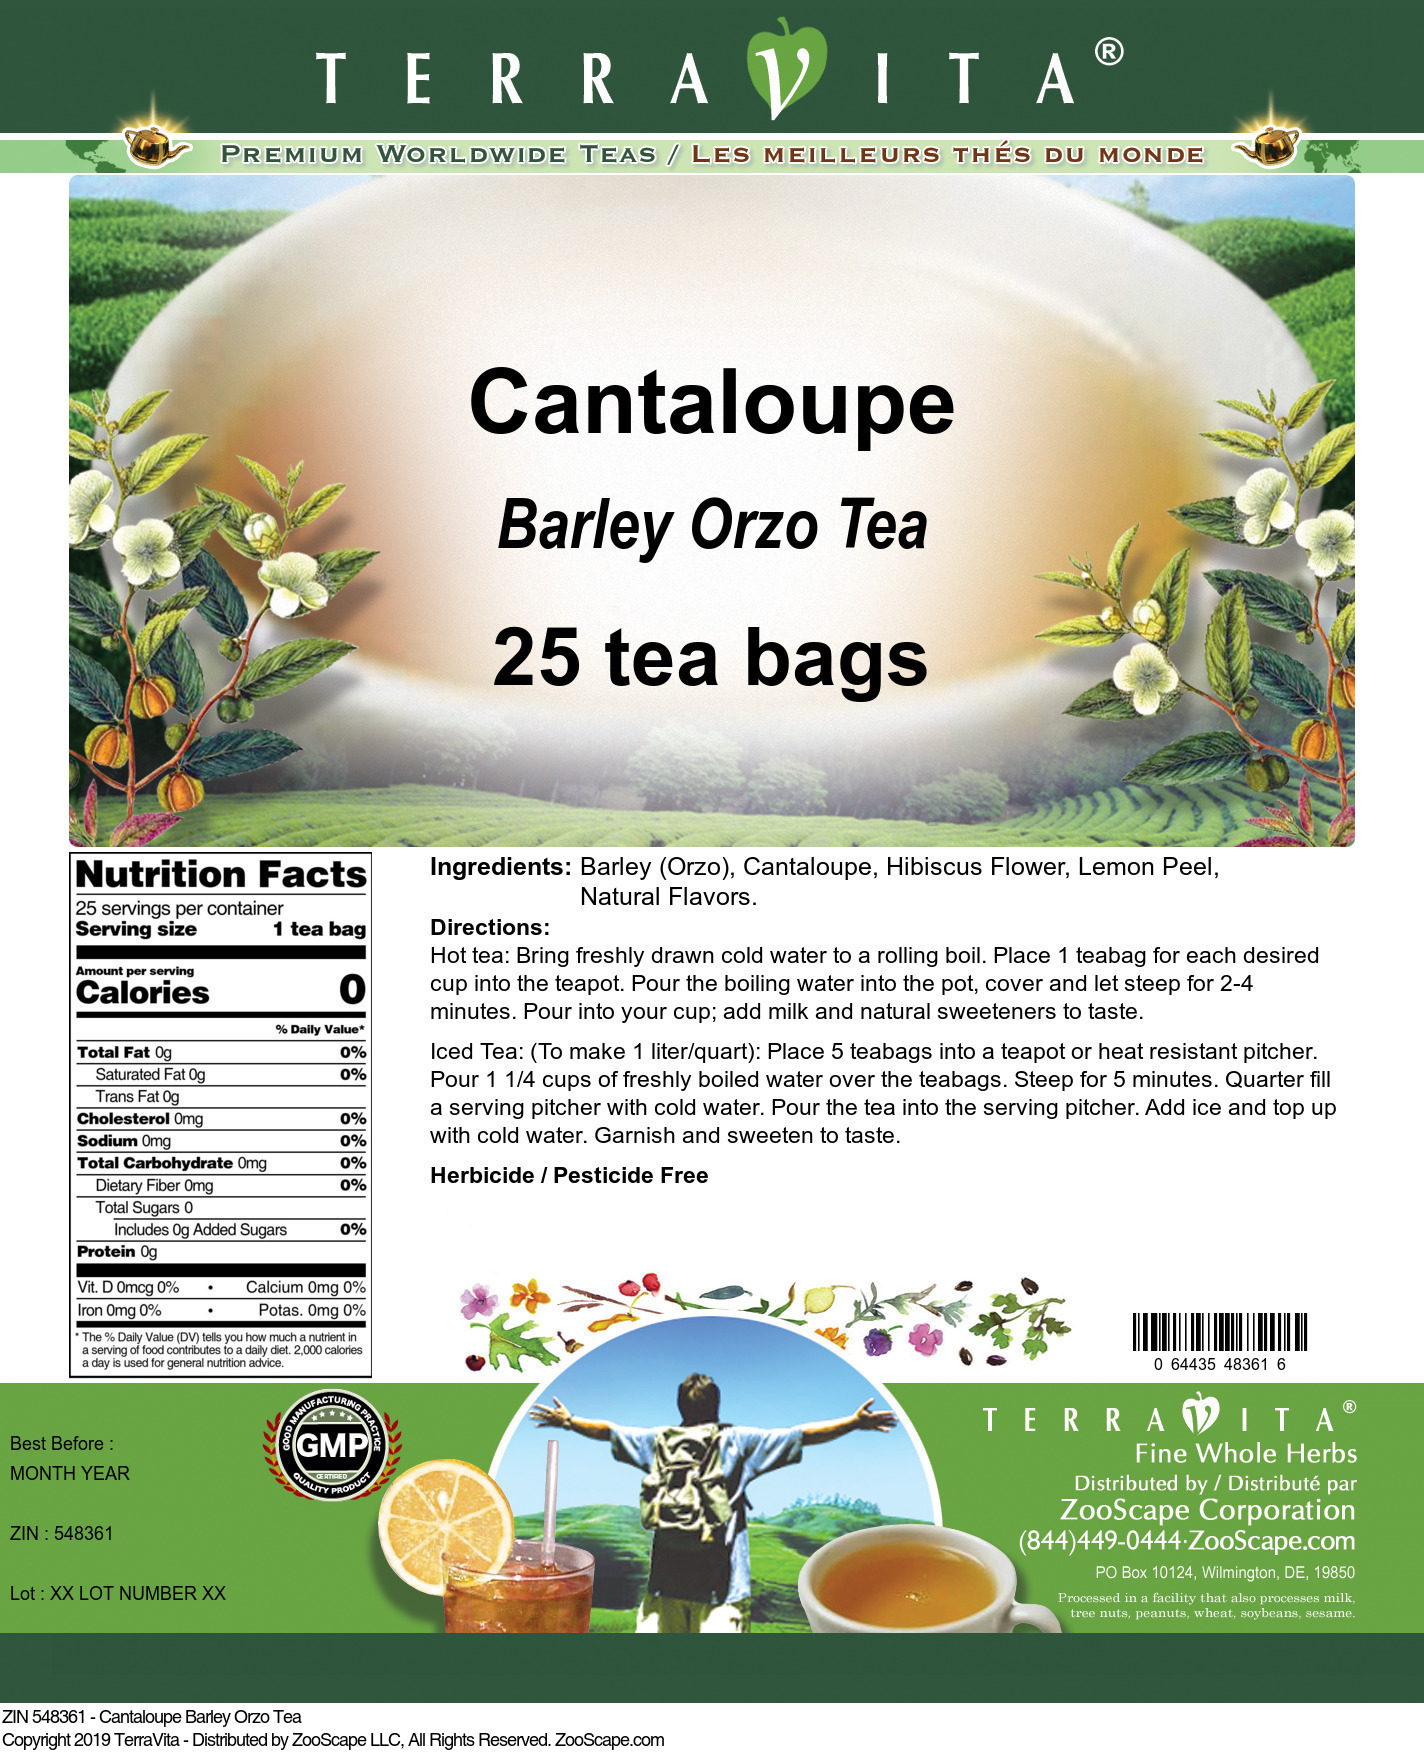 Cantaloupe Barley Orzo Tea - Label